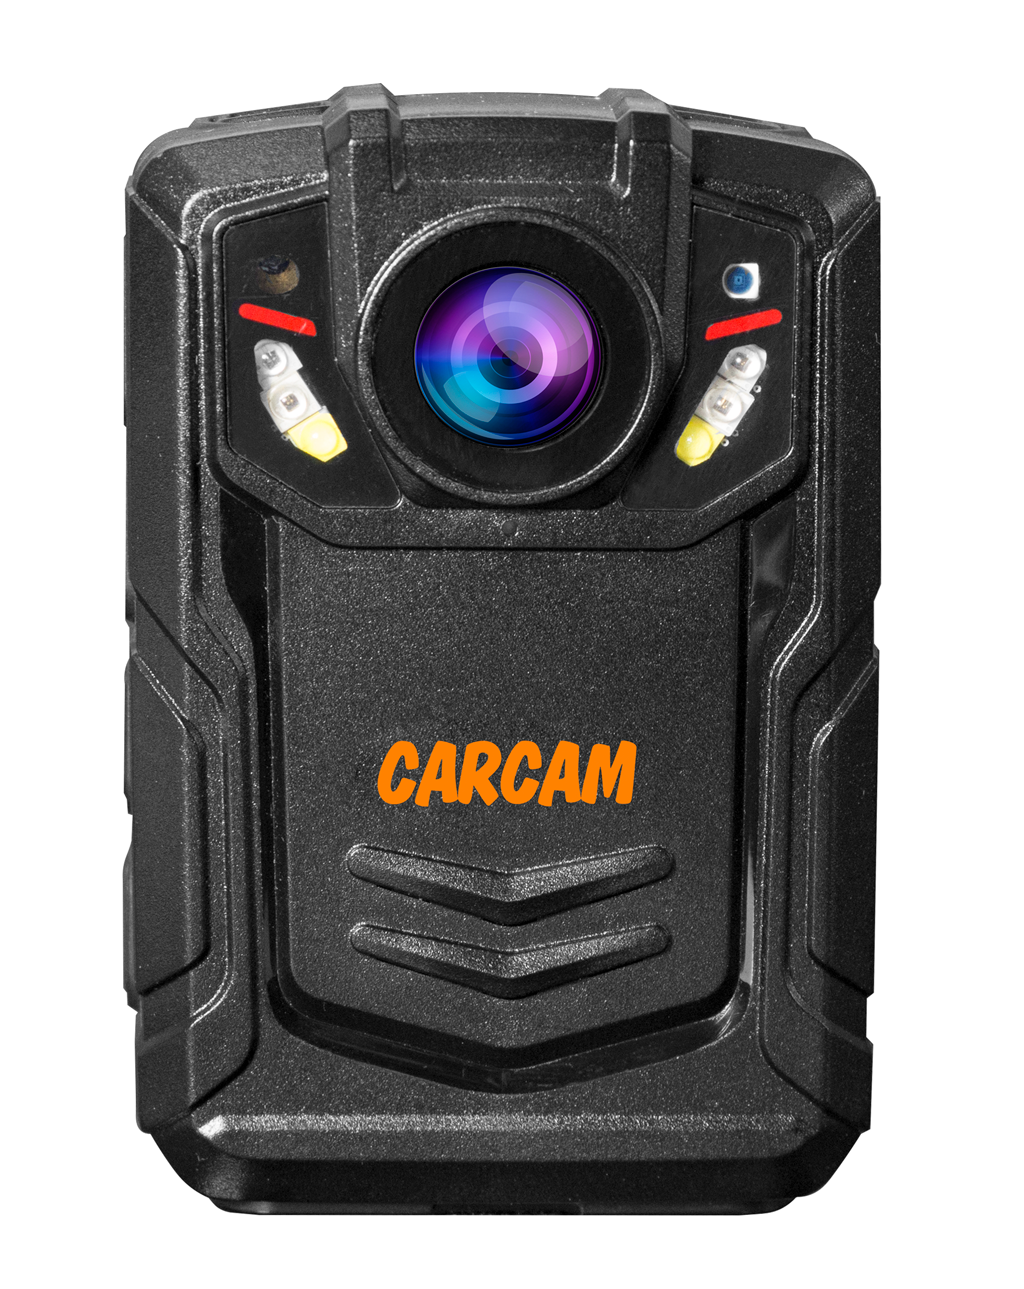 Персональный Quad HD видеорегистратор  CARCAM COMBAT 2S/4G 32GB персональный видеорегистратор carcam combat 2s pro 32gb